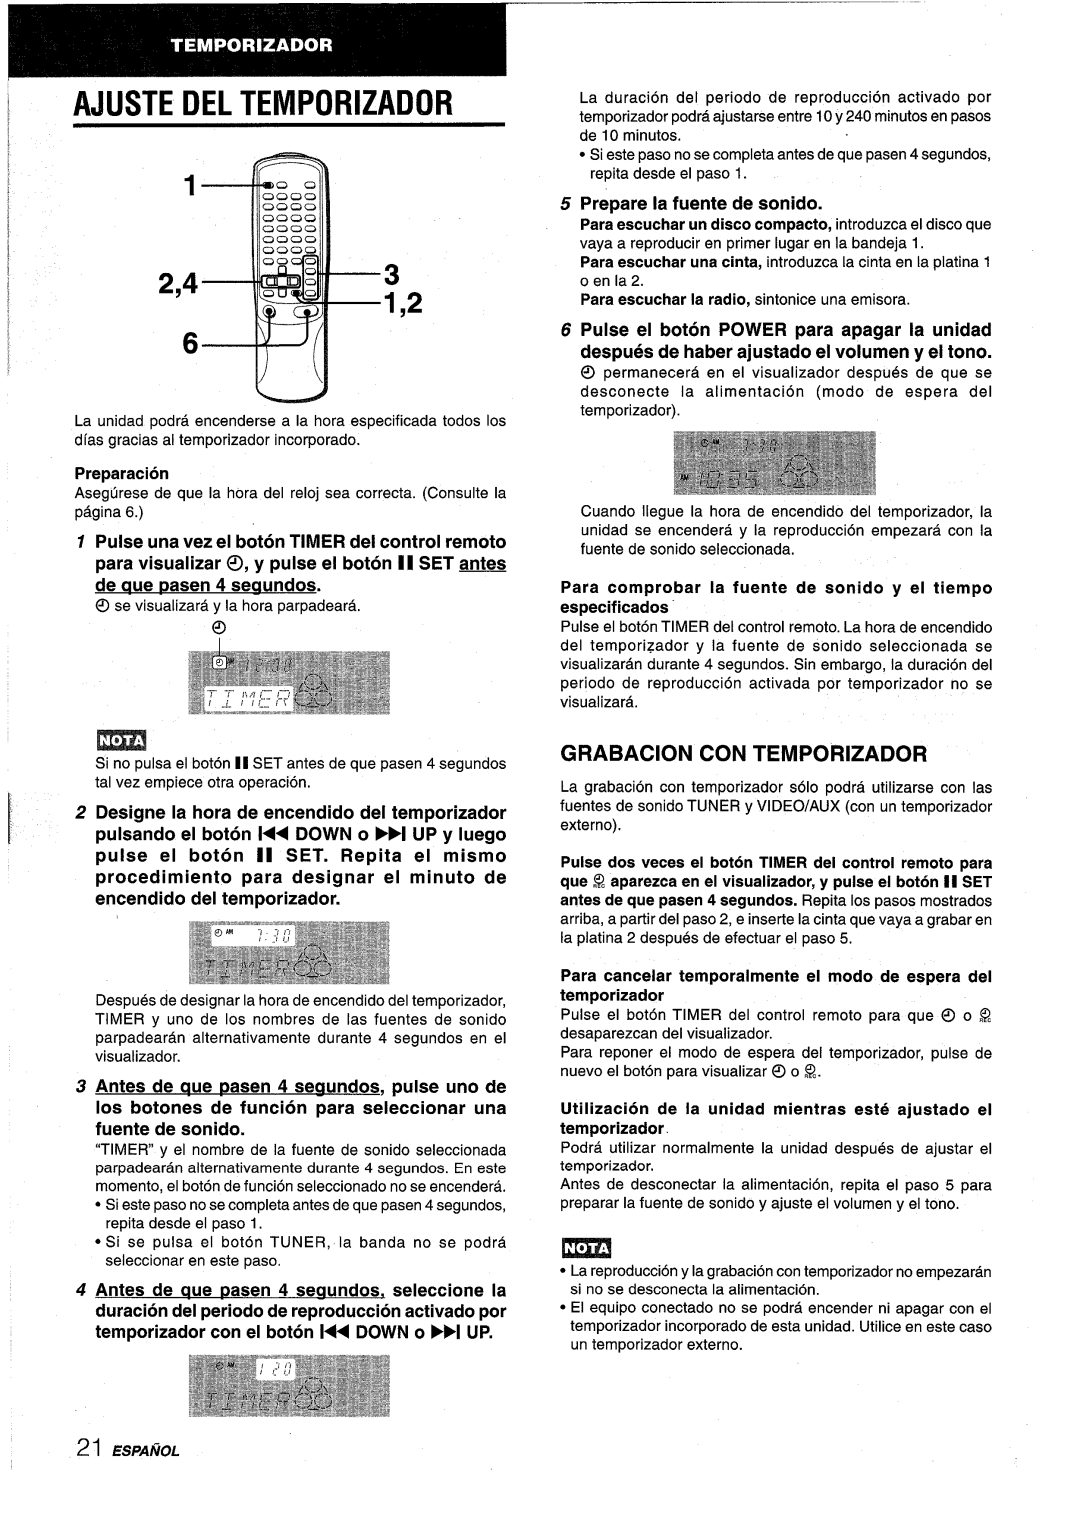 Aiwa NSX-AV800 manual Ajuste Del Temporizador, 2,43, Grabacion Con Temporizador, pulse el boton II SET. Repita el mismo 